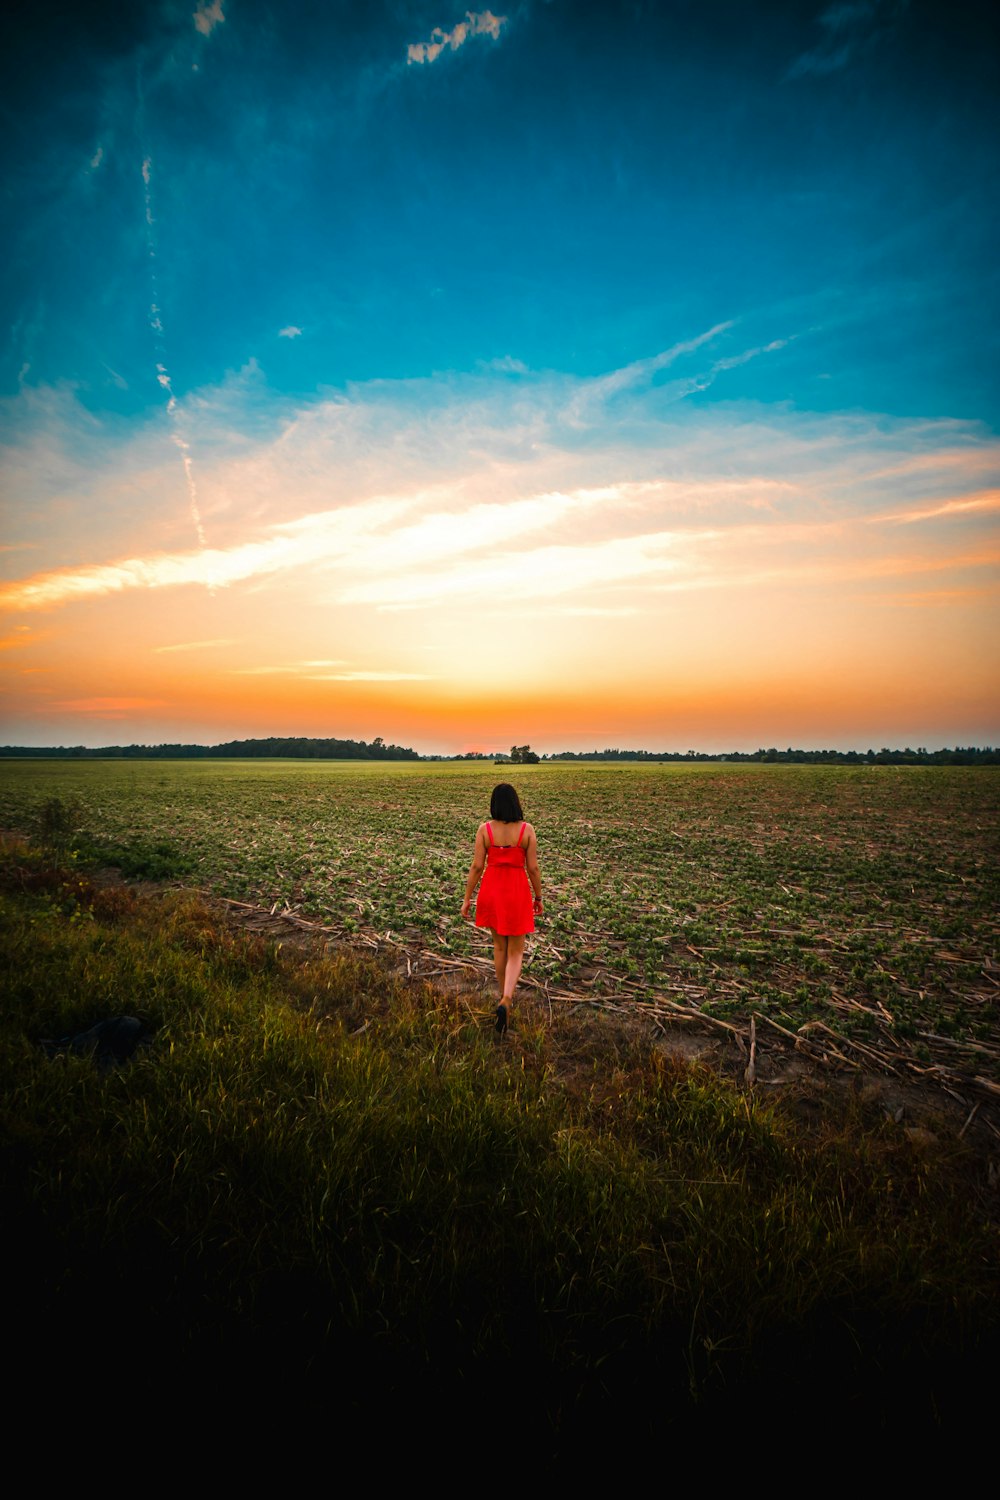 woman walking in a grass field